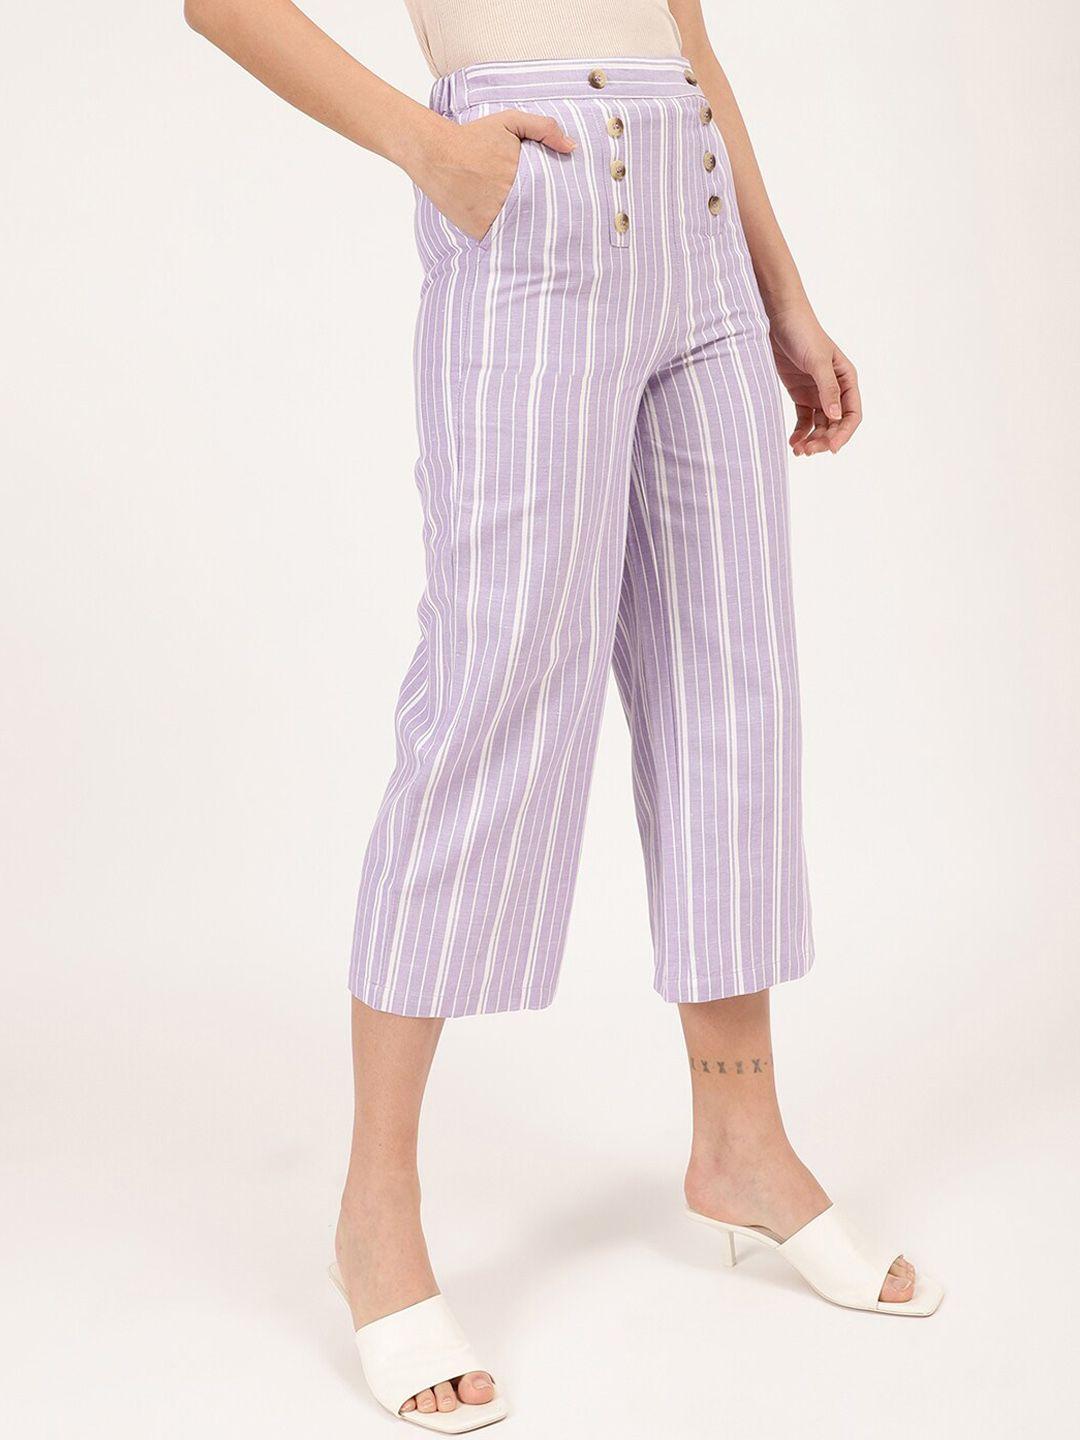 elle women lavender striped culottes trousers